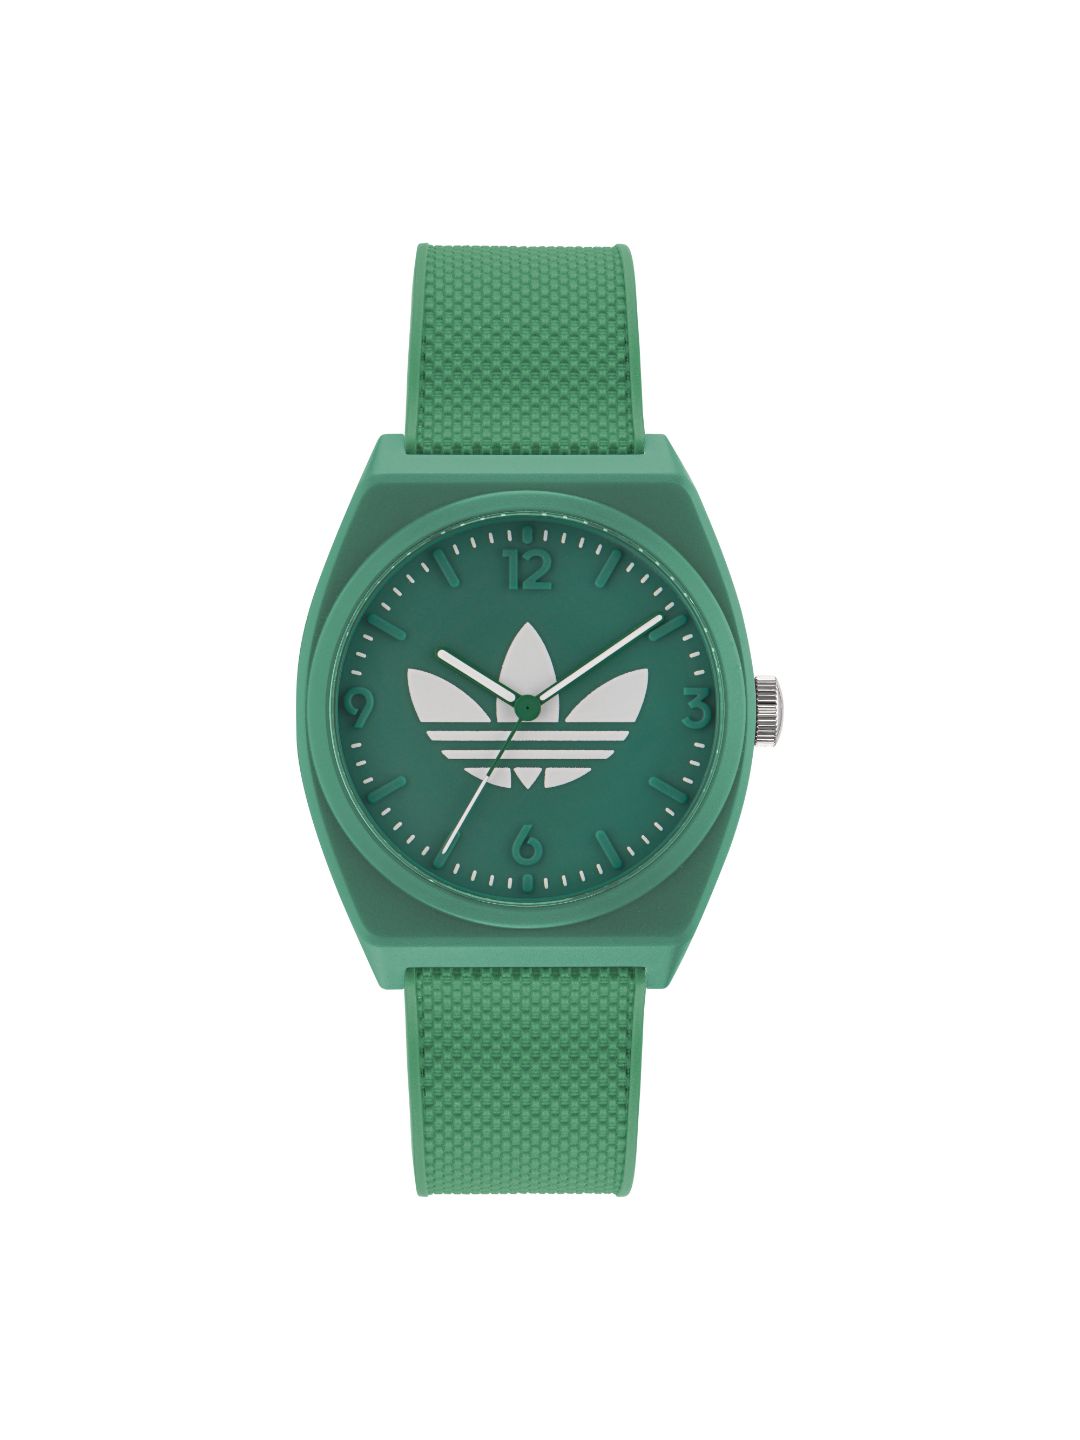 Adidas Originals Green Dial Unisex Watch - AOST23050